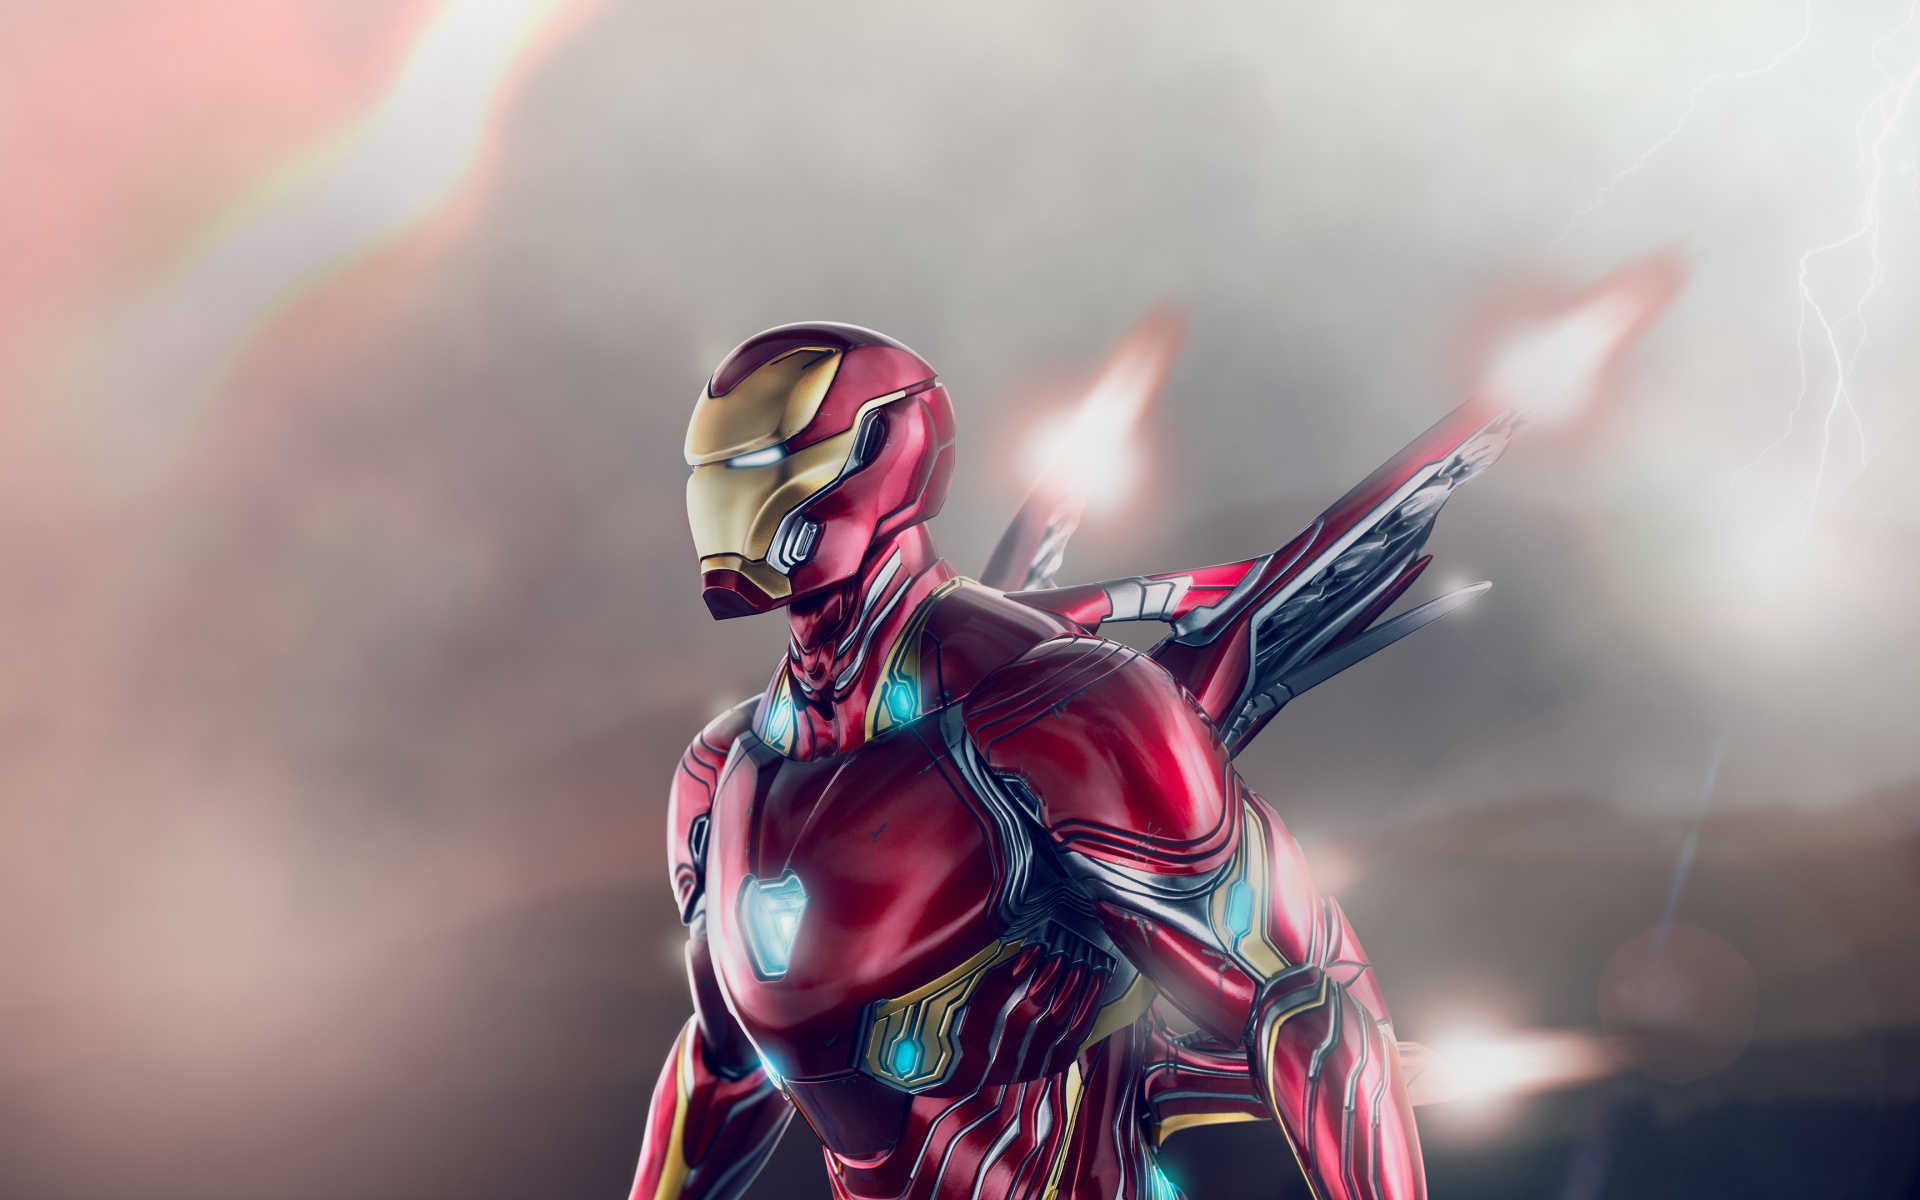 Hình nền Iron Man đầy mạnh mẽ và đẳng cấp sẽ khiến bạn được tràn đầy sức mạnh và tự tin hơn. Hãy tải ngay để trang trí cho thiết bị của bạn thêm phần đẳng cấp!